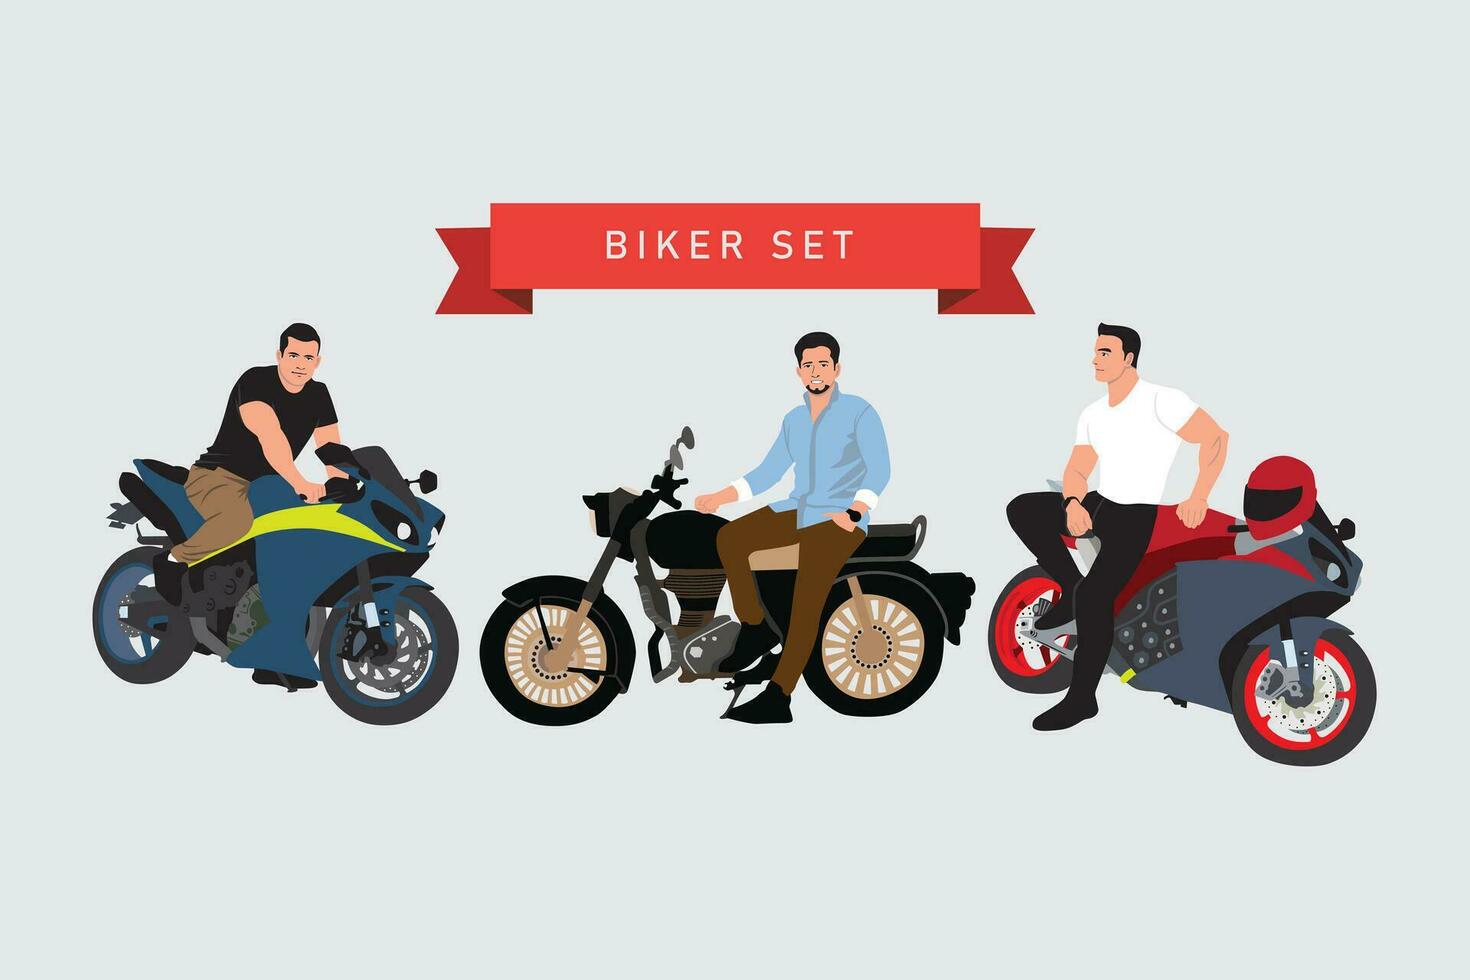 cyklister på motorcyklar. vektor illustration i platt stil. motorcyklister på motorcykel.